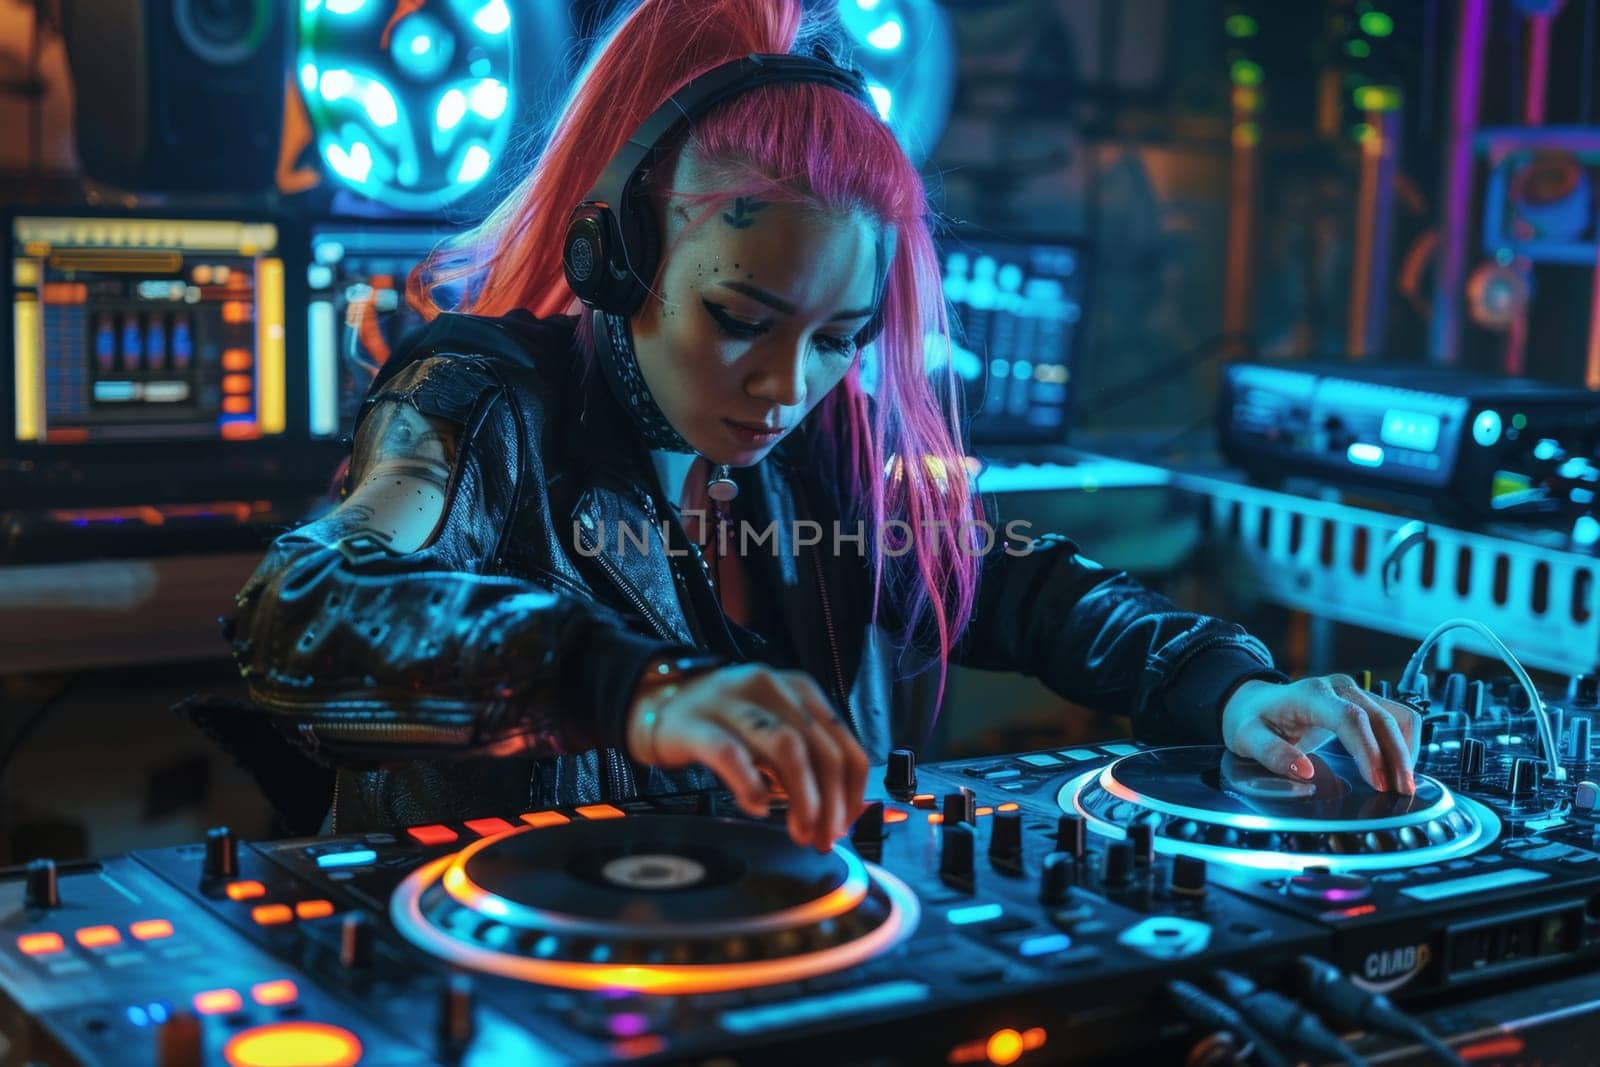 Cyberpunk DJ girl playing music in a nightclub.